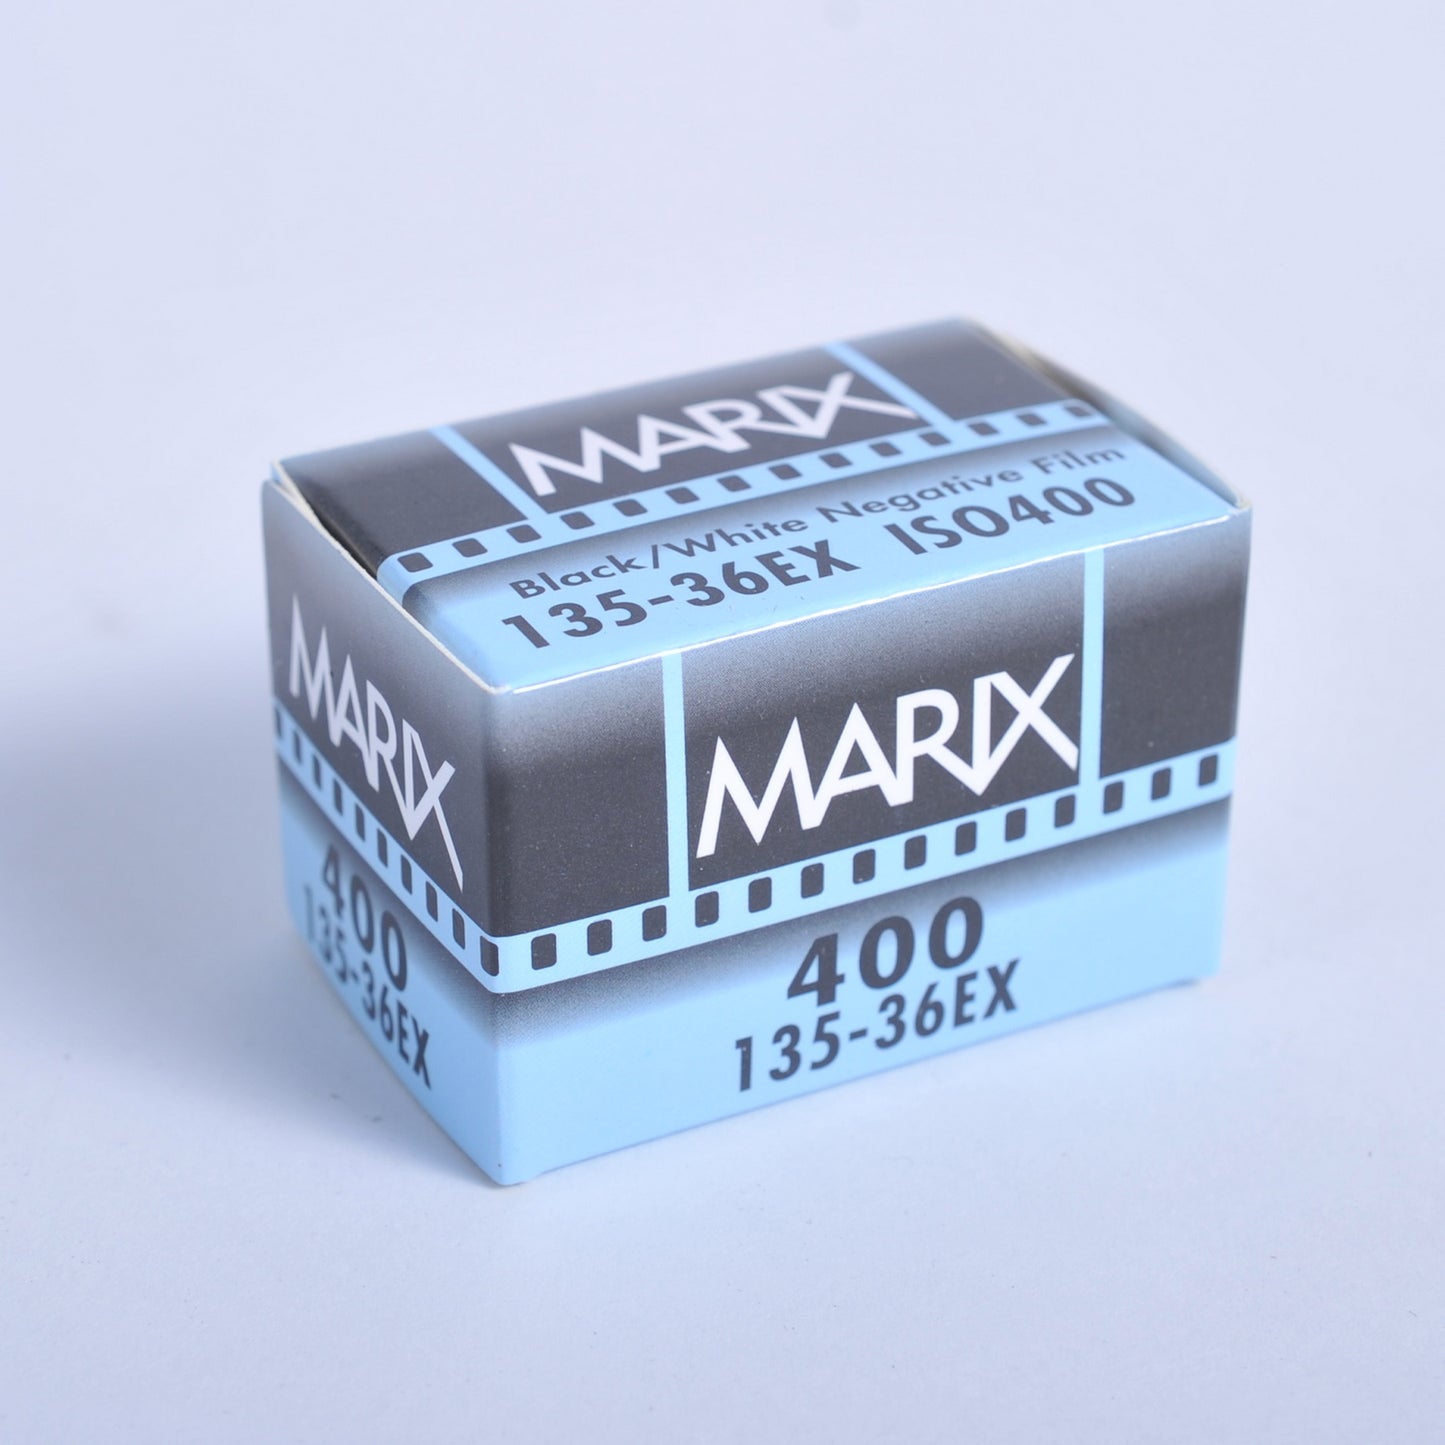 マリックス 白黒ネガフィルム ISO100 36枚 MARIX BLACK＆WHITE FILM